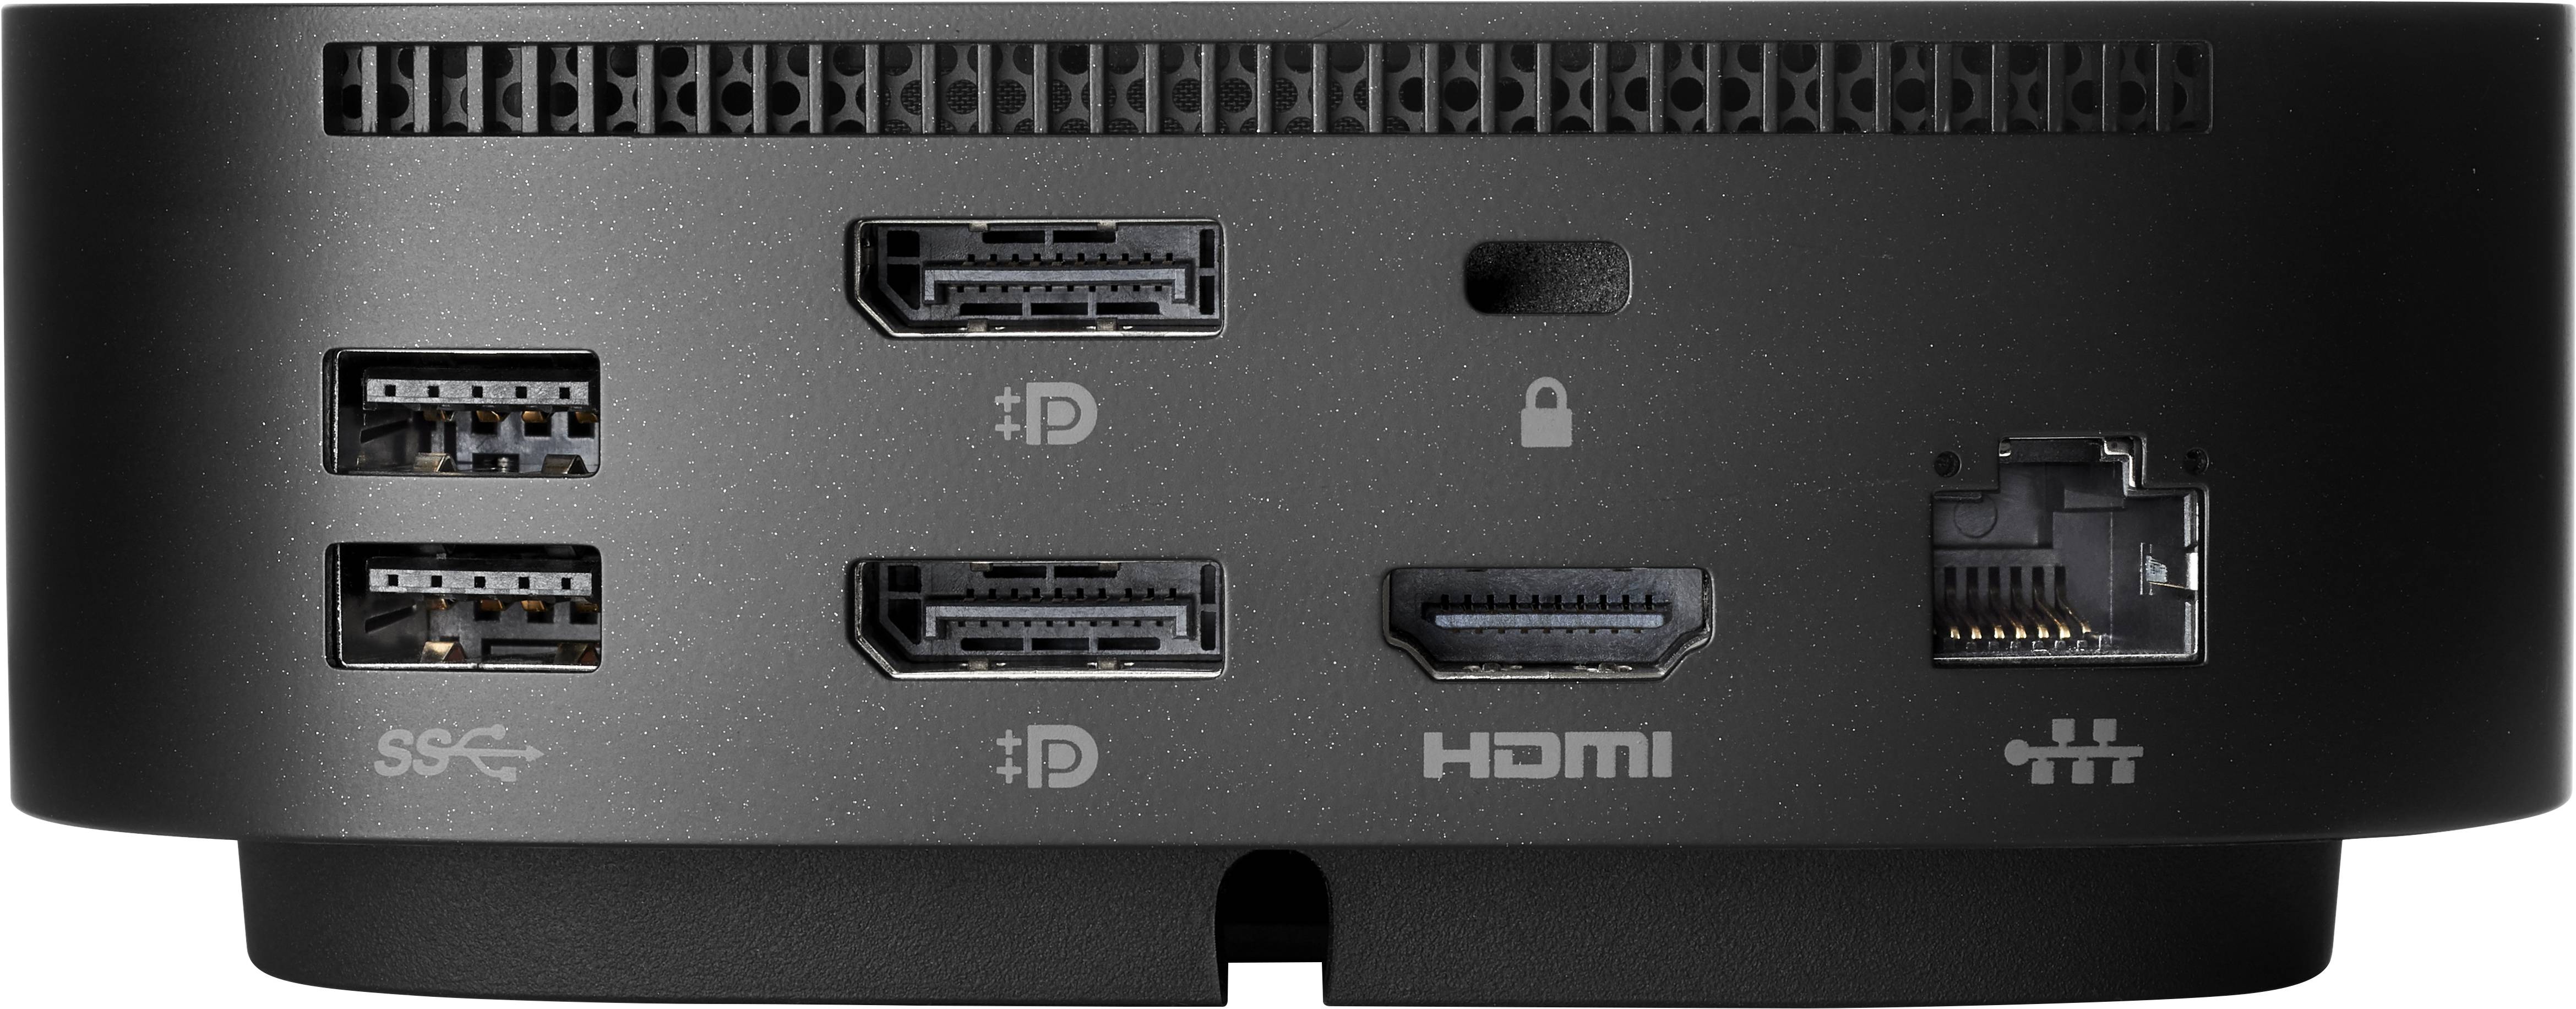 Rca Informatique - image du produit : USB-C G5 DOCK 100W